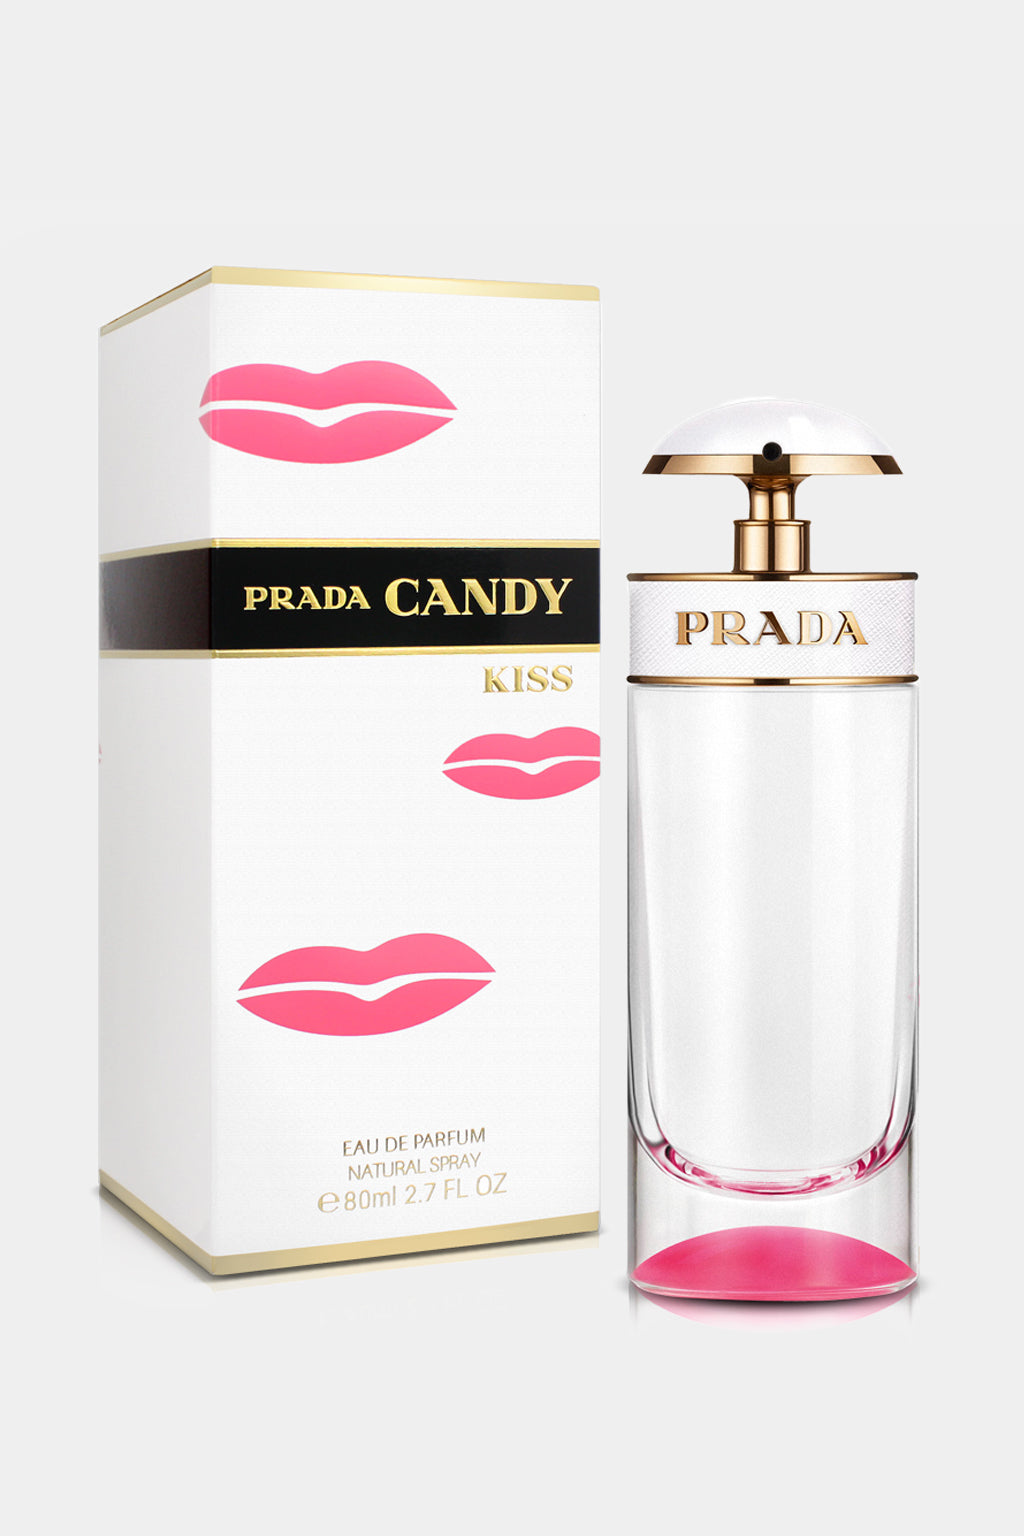 Prada - Candy Kiss Eau de Parfum